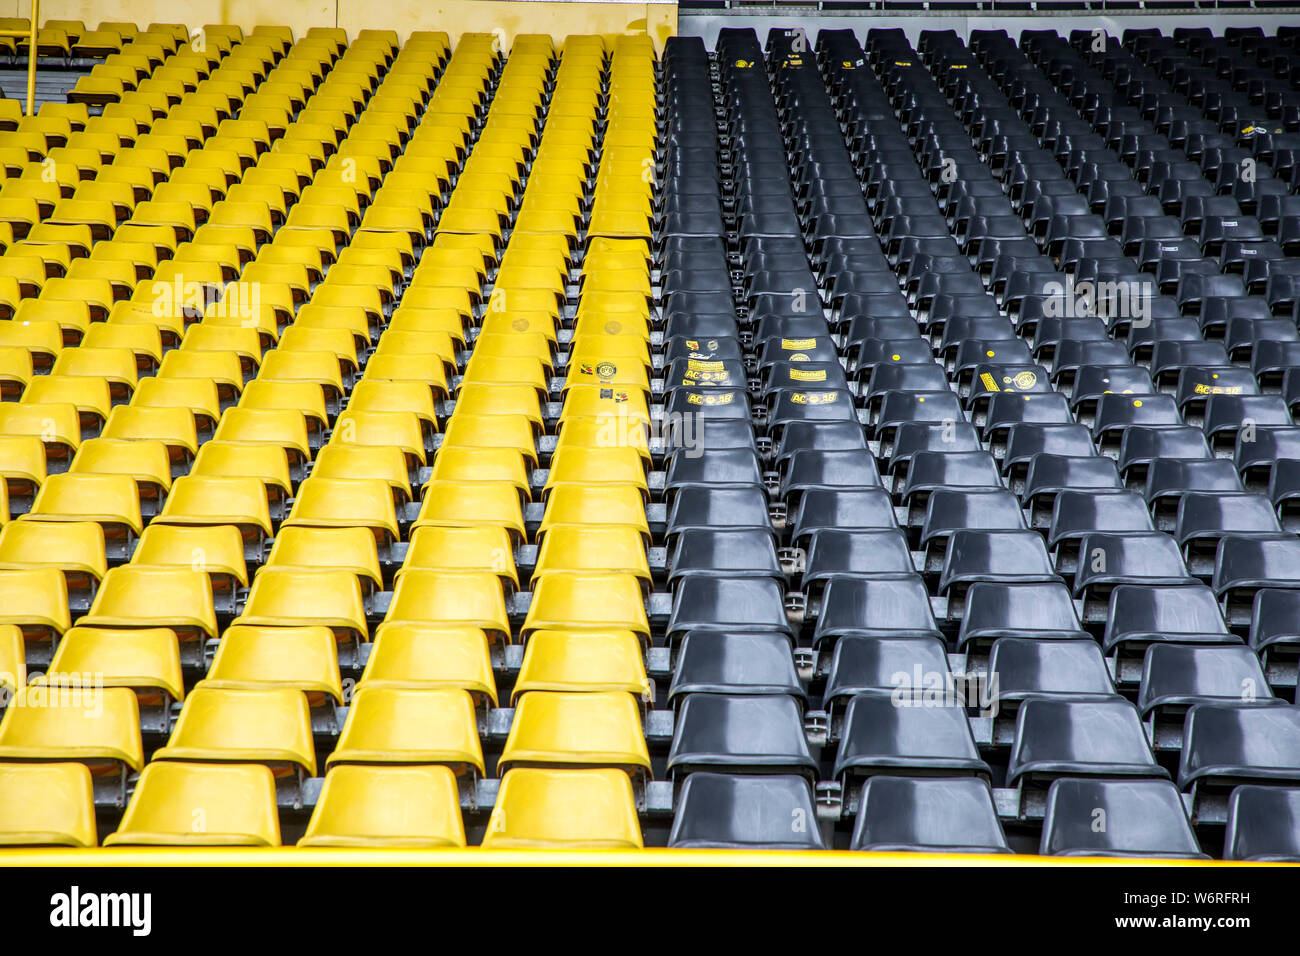 Parc, Westfalenstadion Signal-Iduna-, stade de football de BVB Borussia Dortmund, sièges de spectateurs en noir-jaune, les couleurs du club Banque D'Images